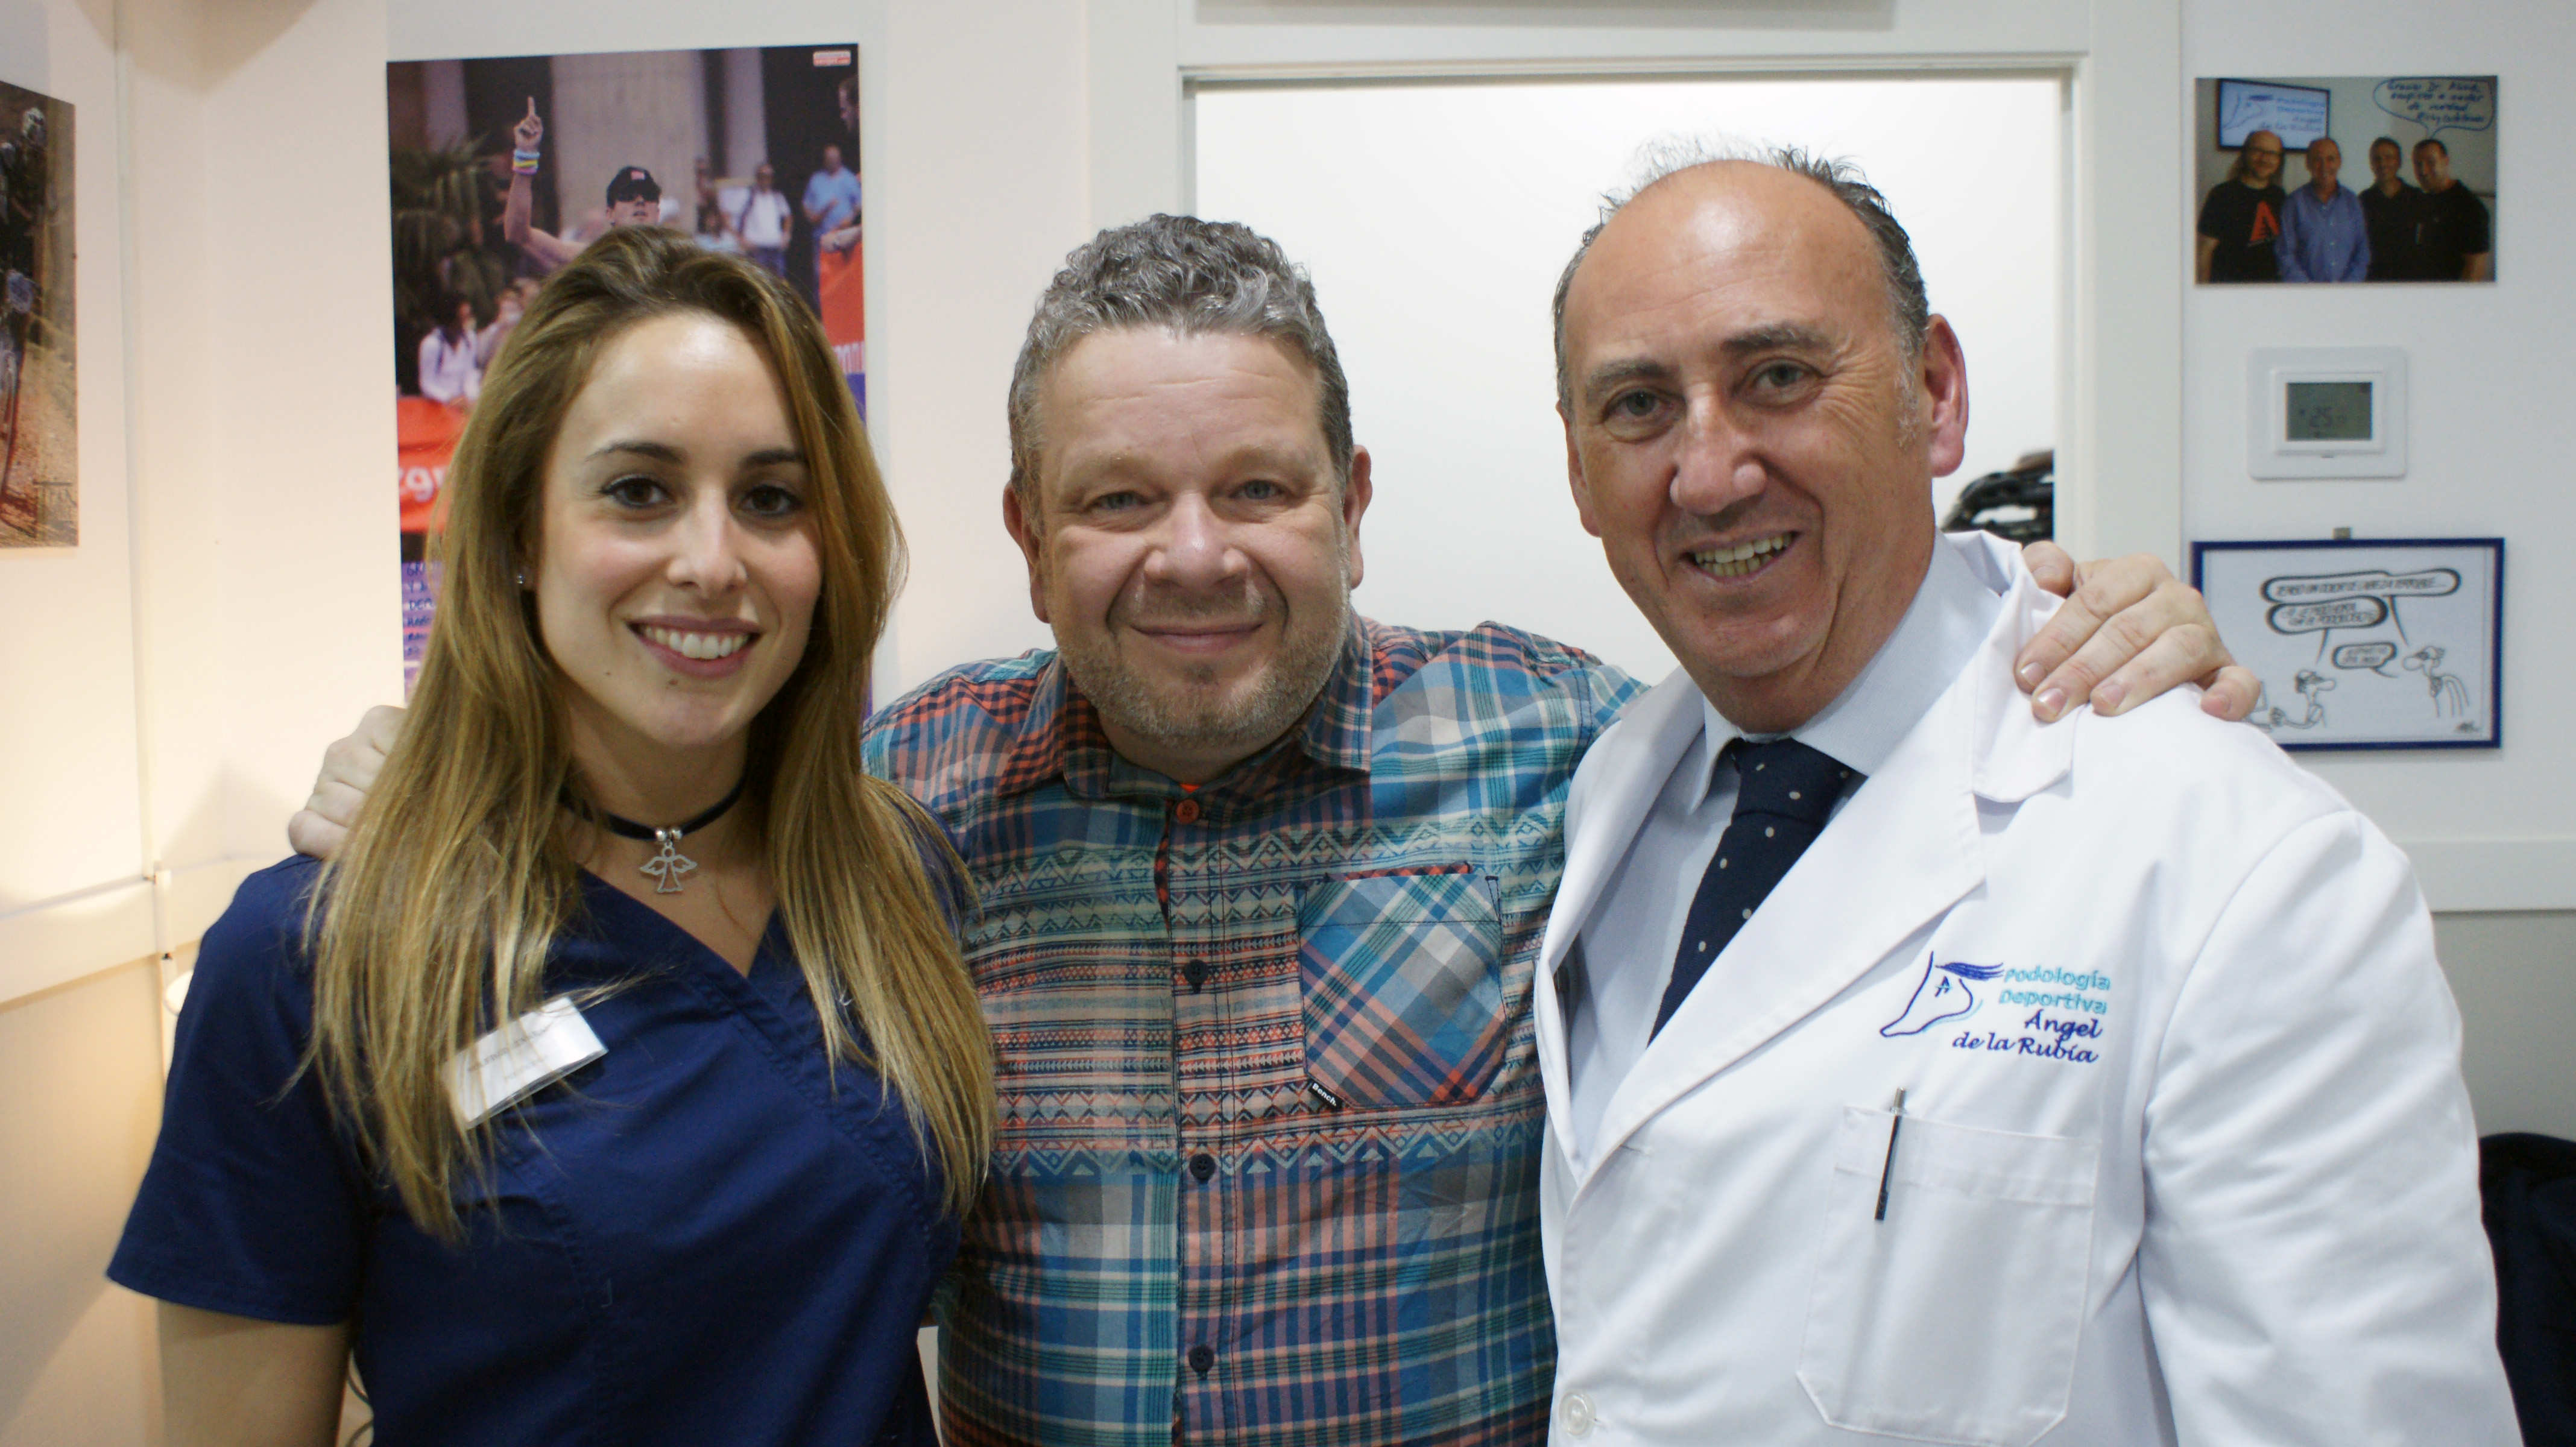 Alberto Chicote con el equipo del Centro de podología deportiva Angel de la Rubia